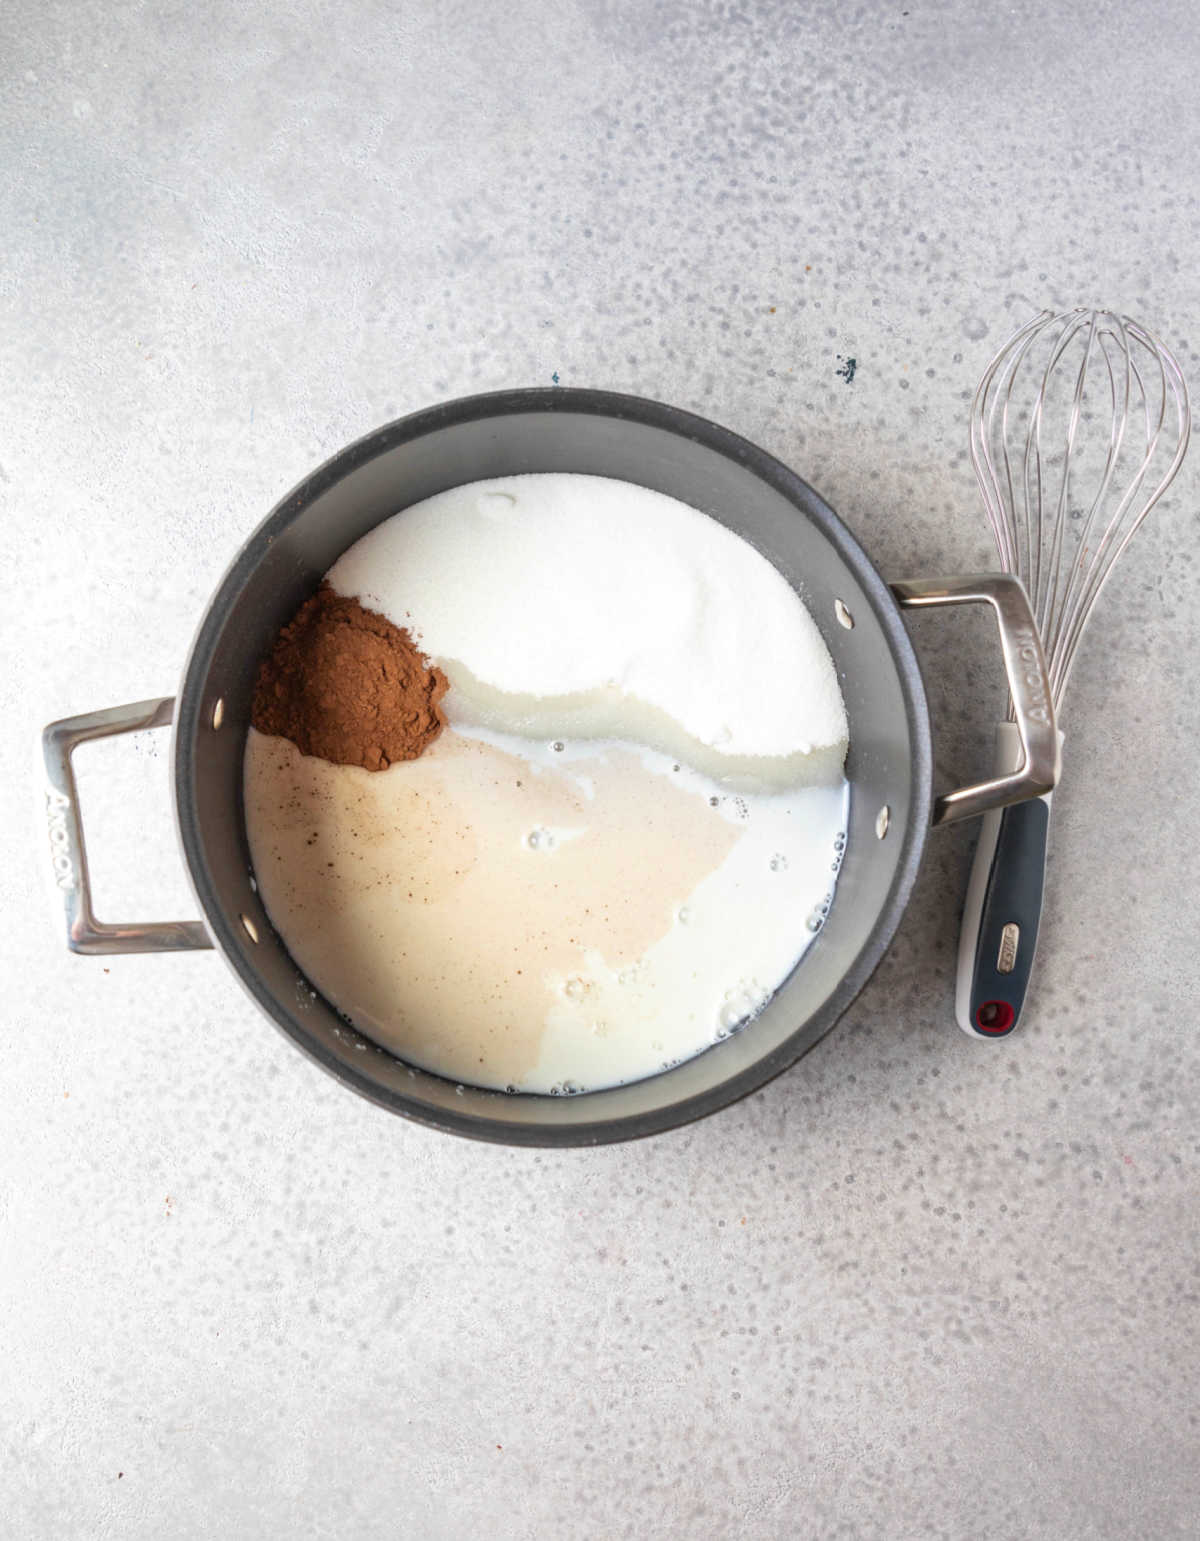 Cocoa powder milk and sugar in a saucepan.